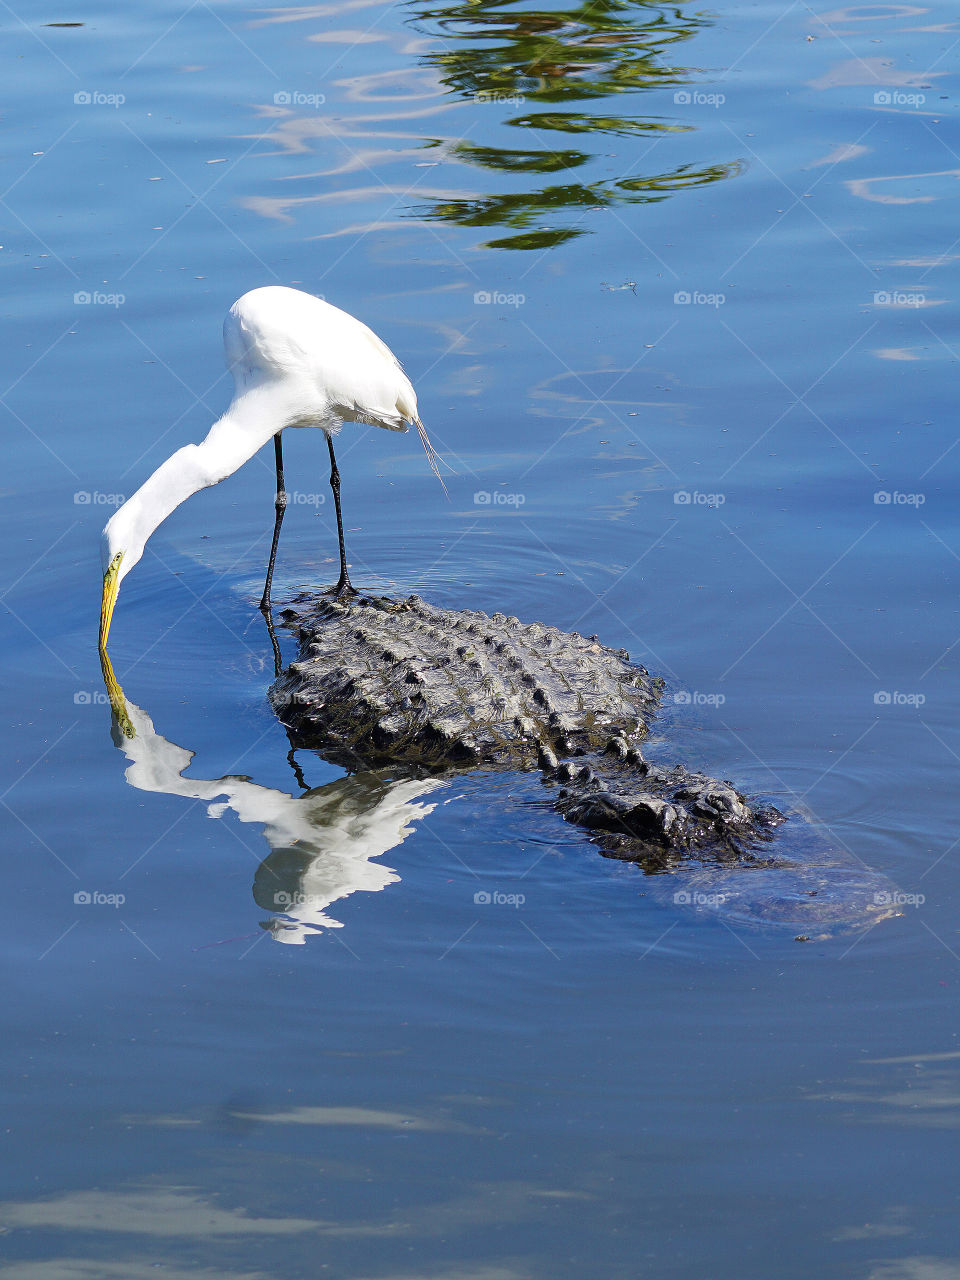 Orlando,FL - Egret standing on alligator